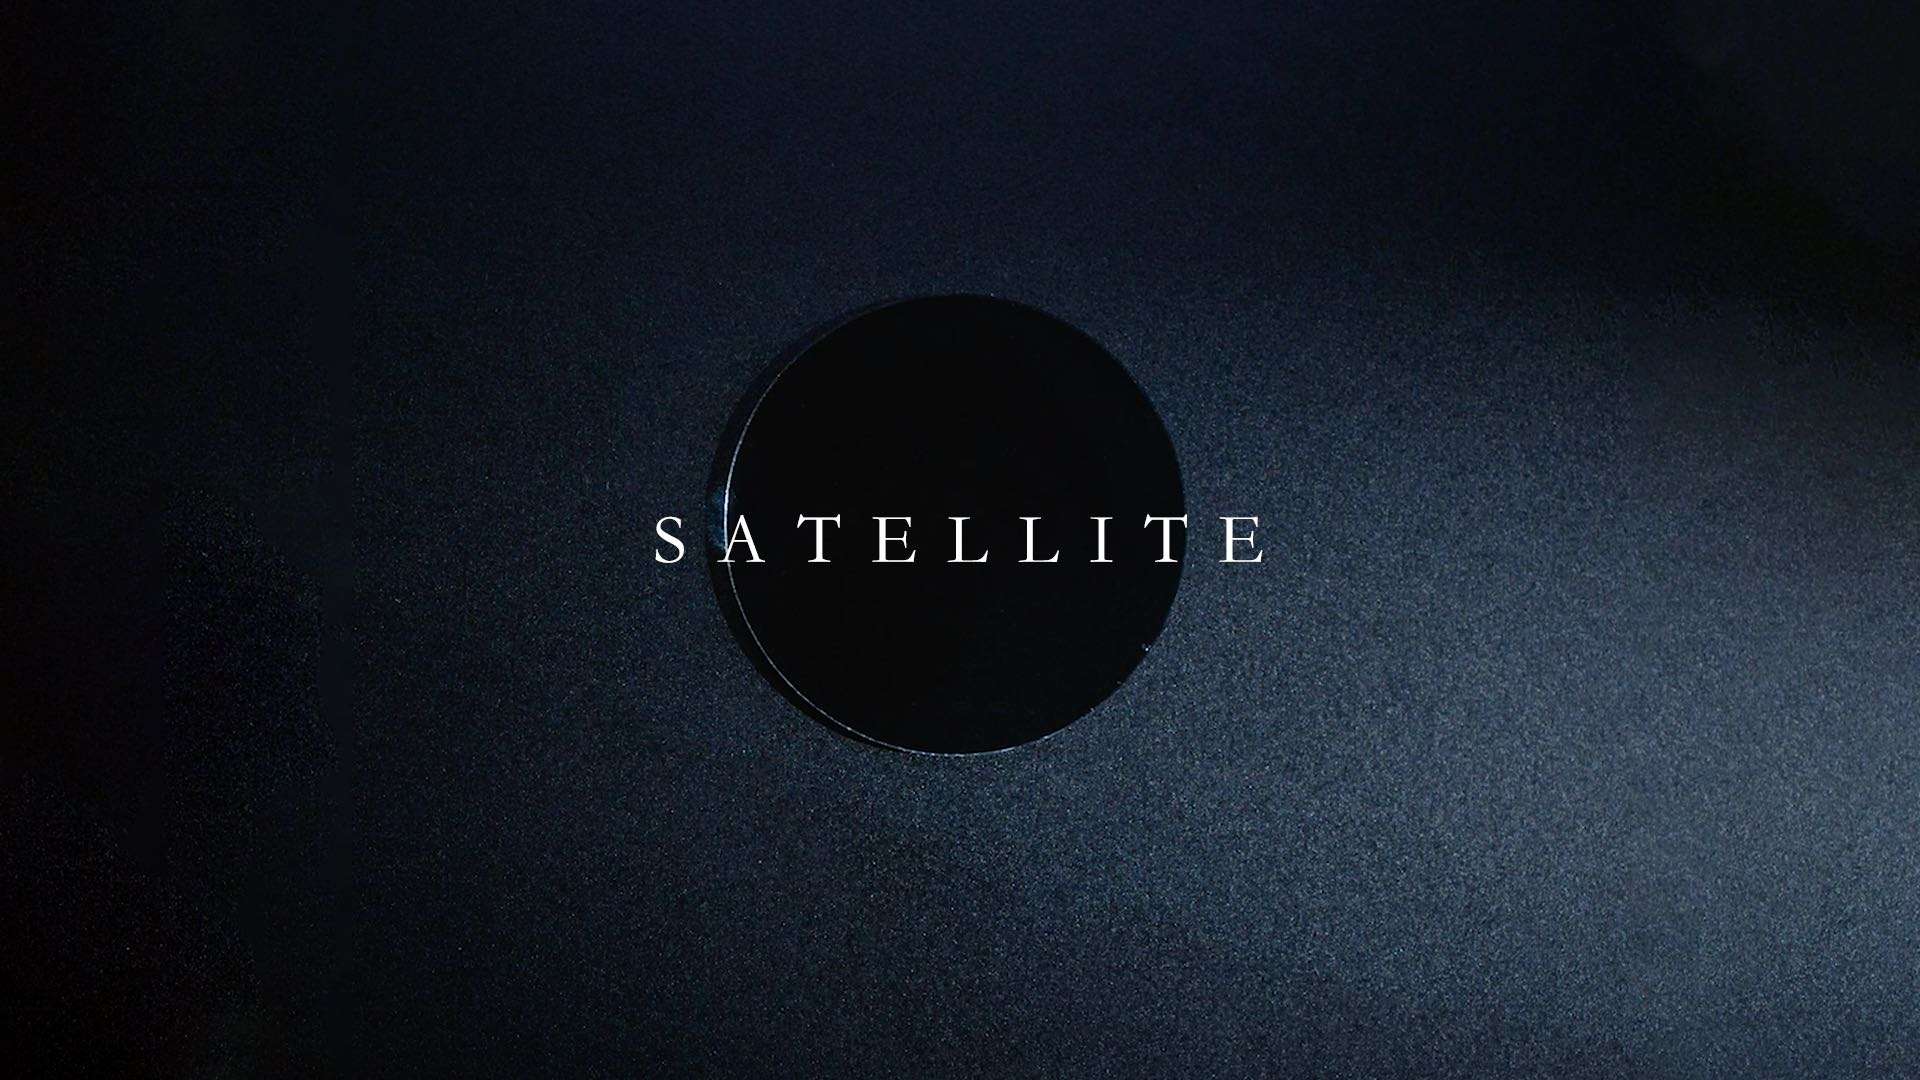 FRANKFURT HELMET <Satellite> MV teaser